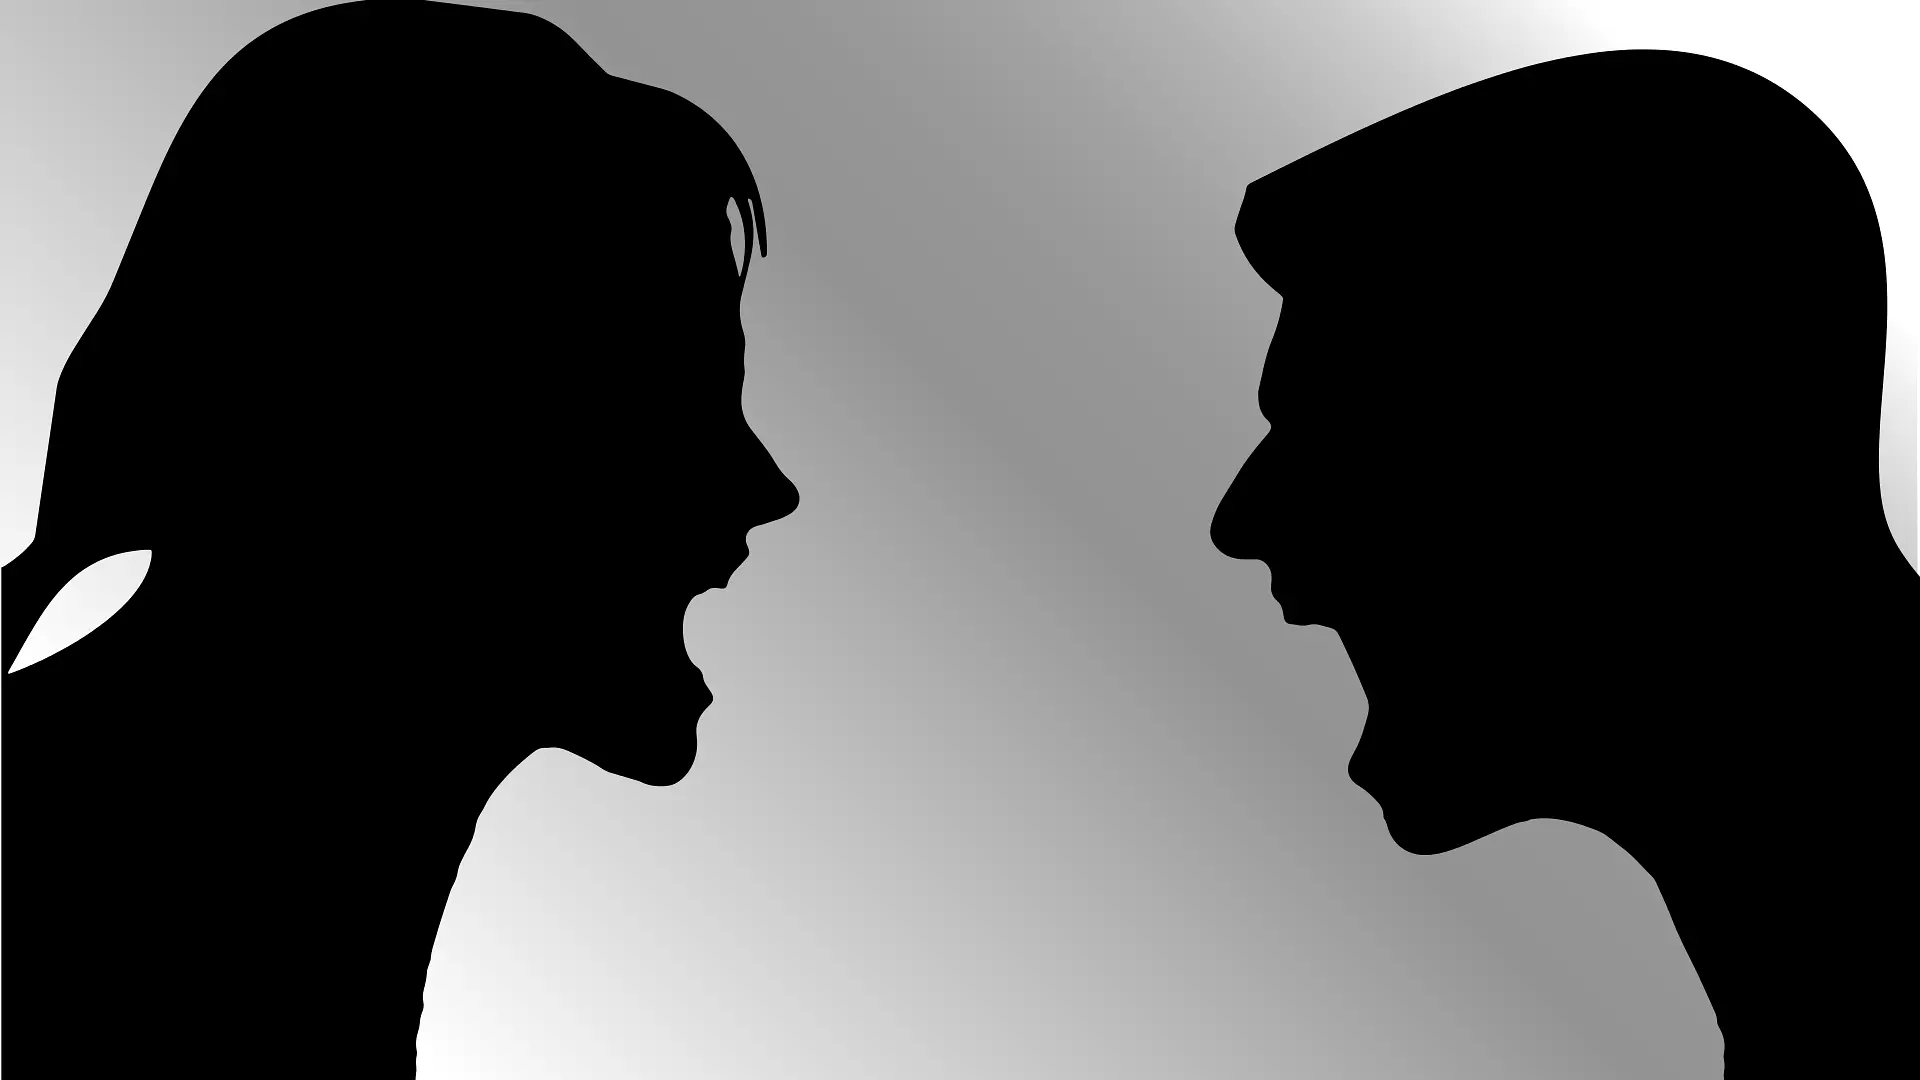 svađanje, ljutnja, bes pixabay-6599ceff479e0.webp